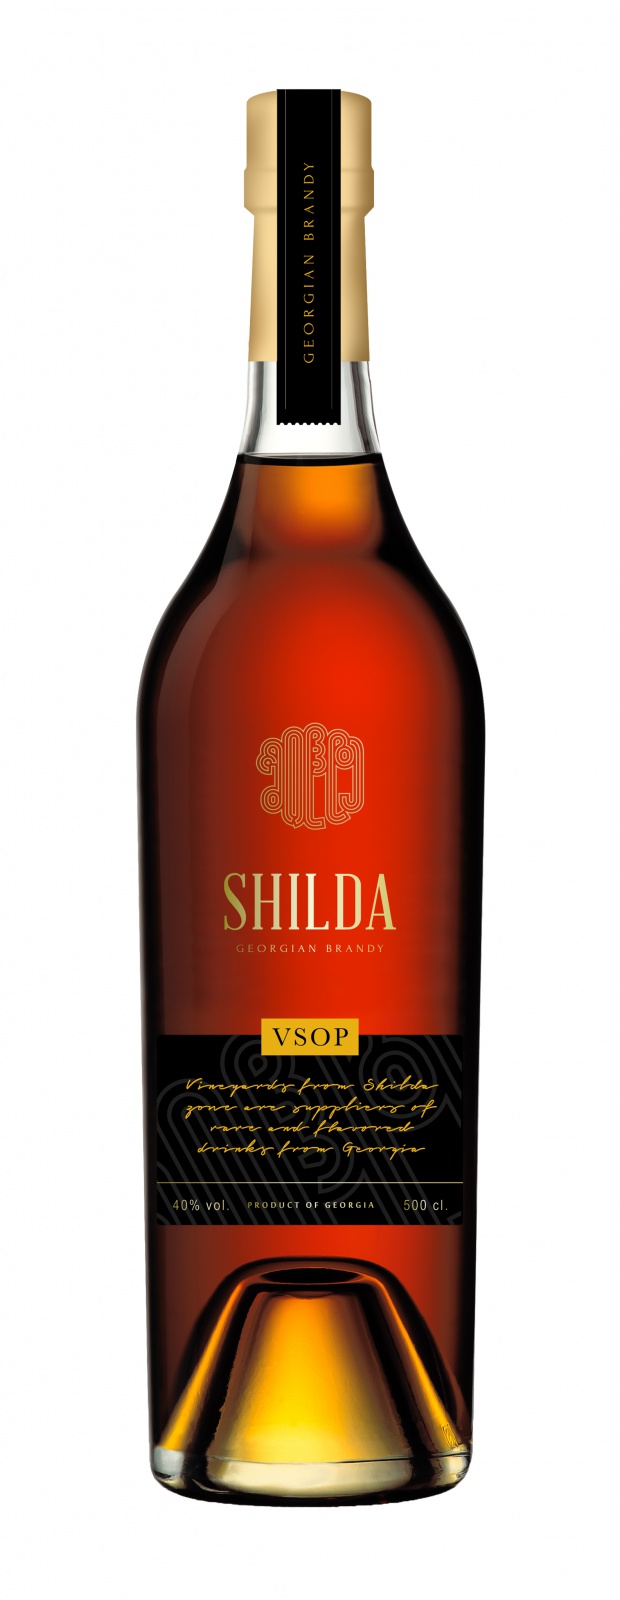 Shilda VSOP 50cl 